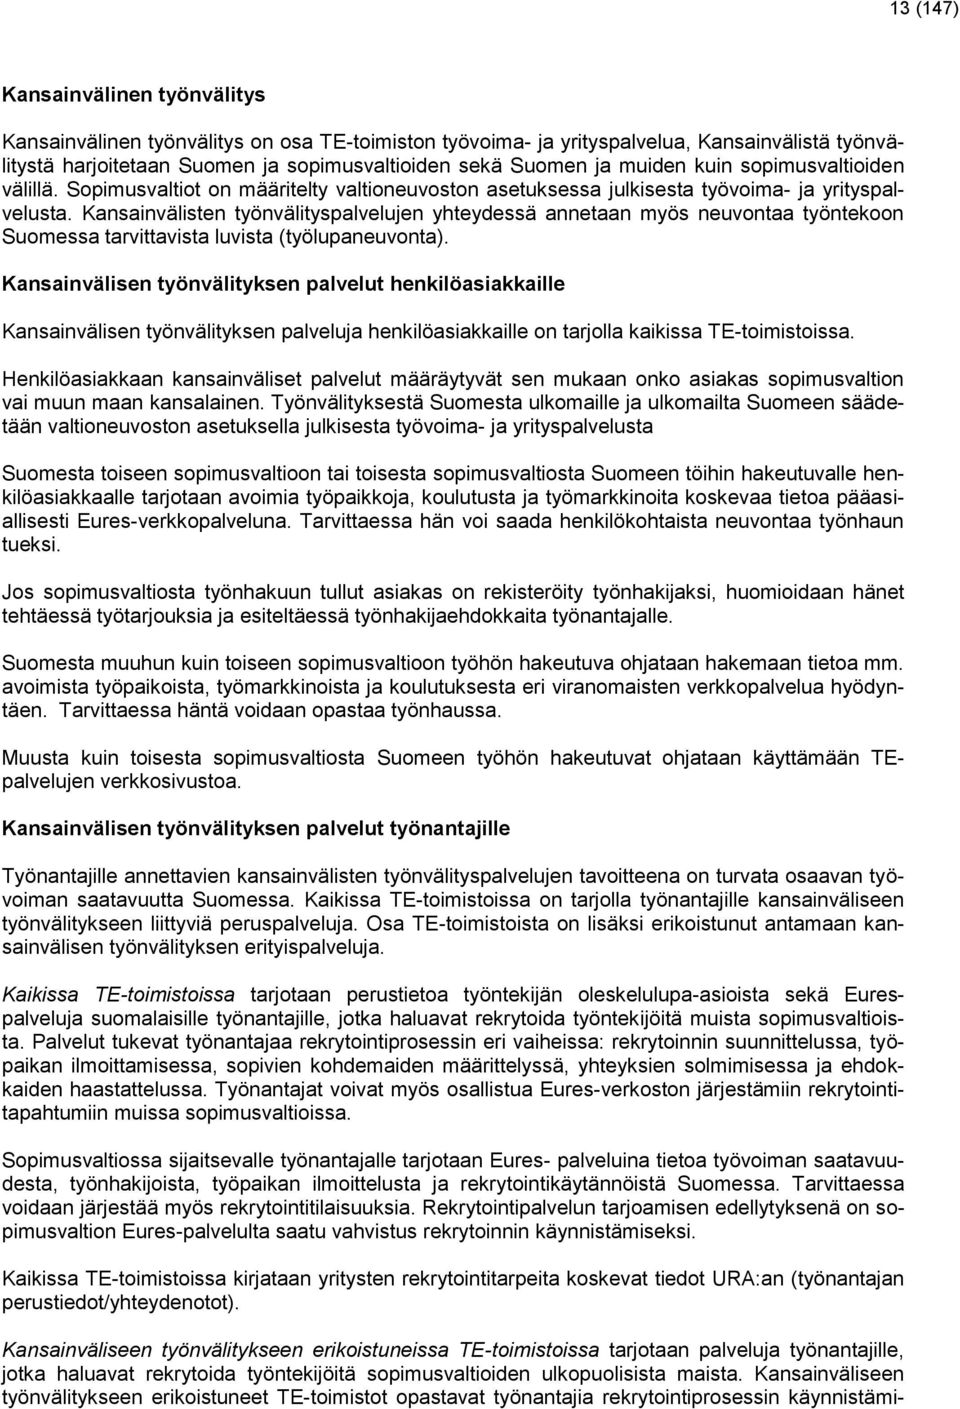 Kansainvälisten työnvälityspalvelujen yhteydessä annetaan myös neuvontaa työntekoon Suomessa tarvittavista luvista (työlupaneuvonta).